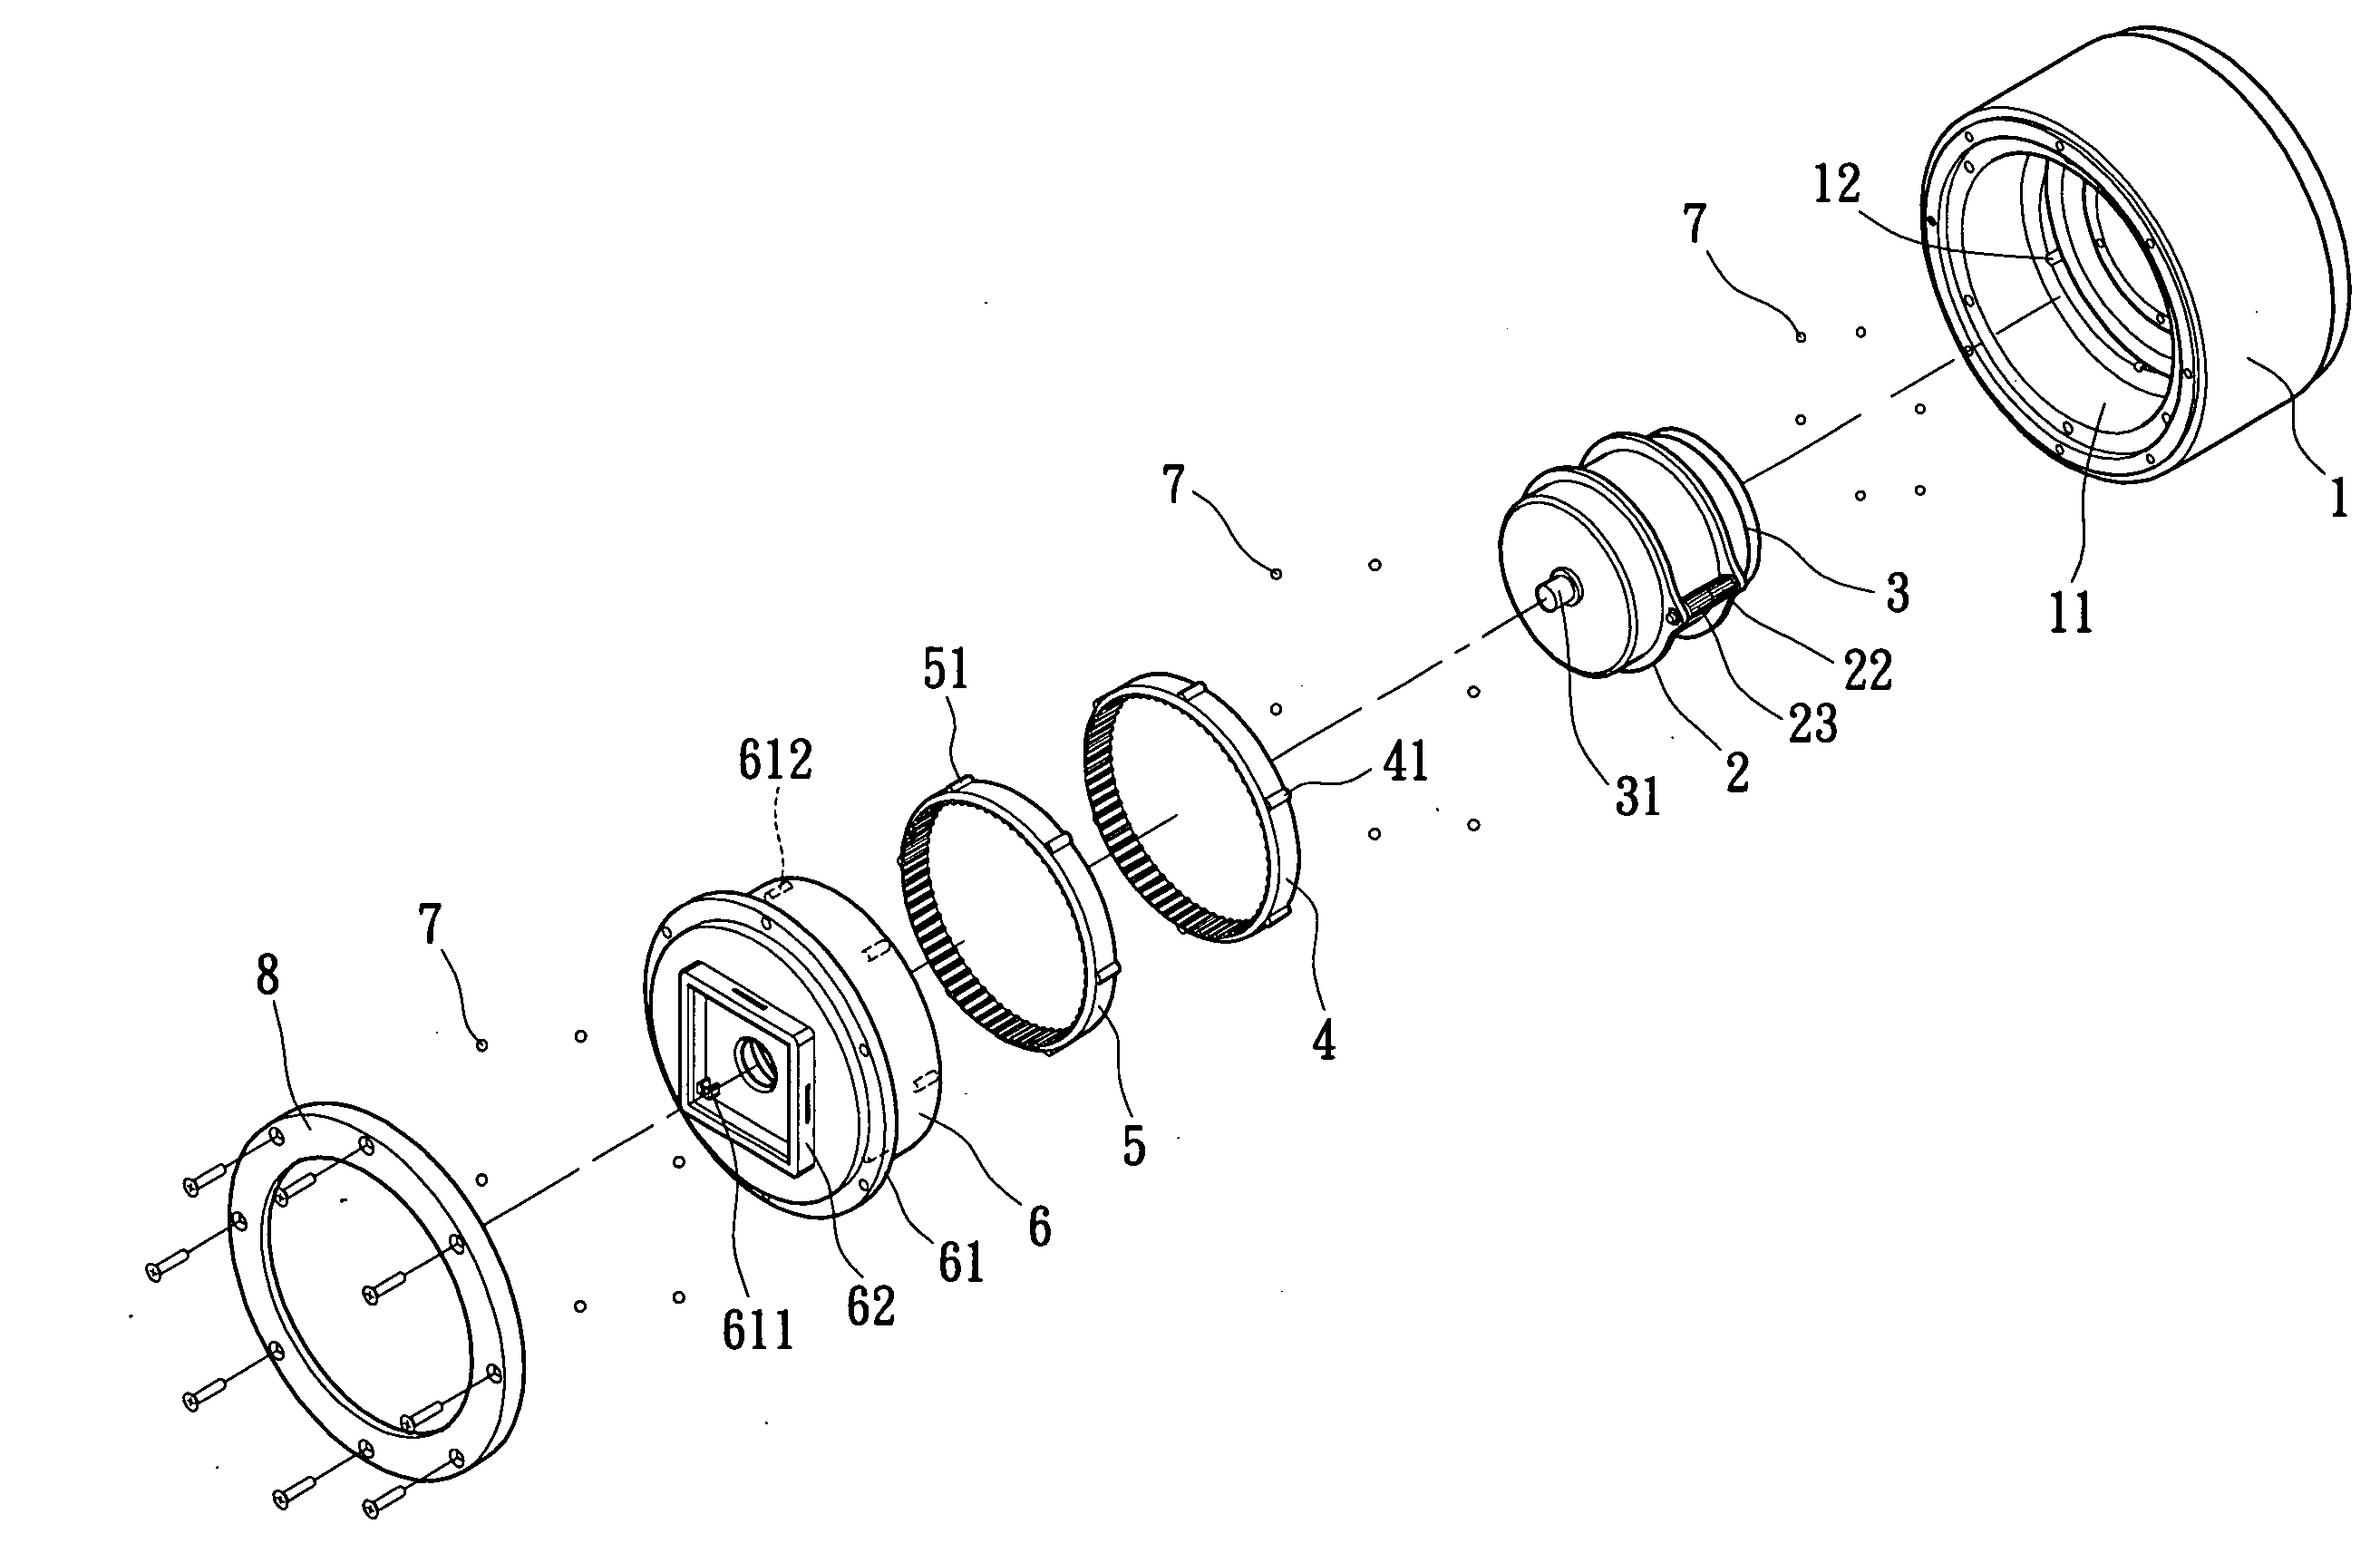 Modular gear train mechanism with an internal motor